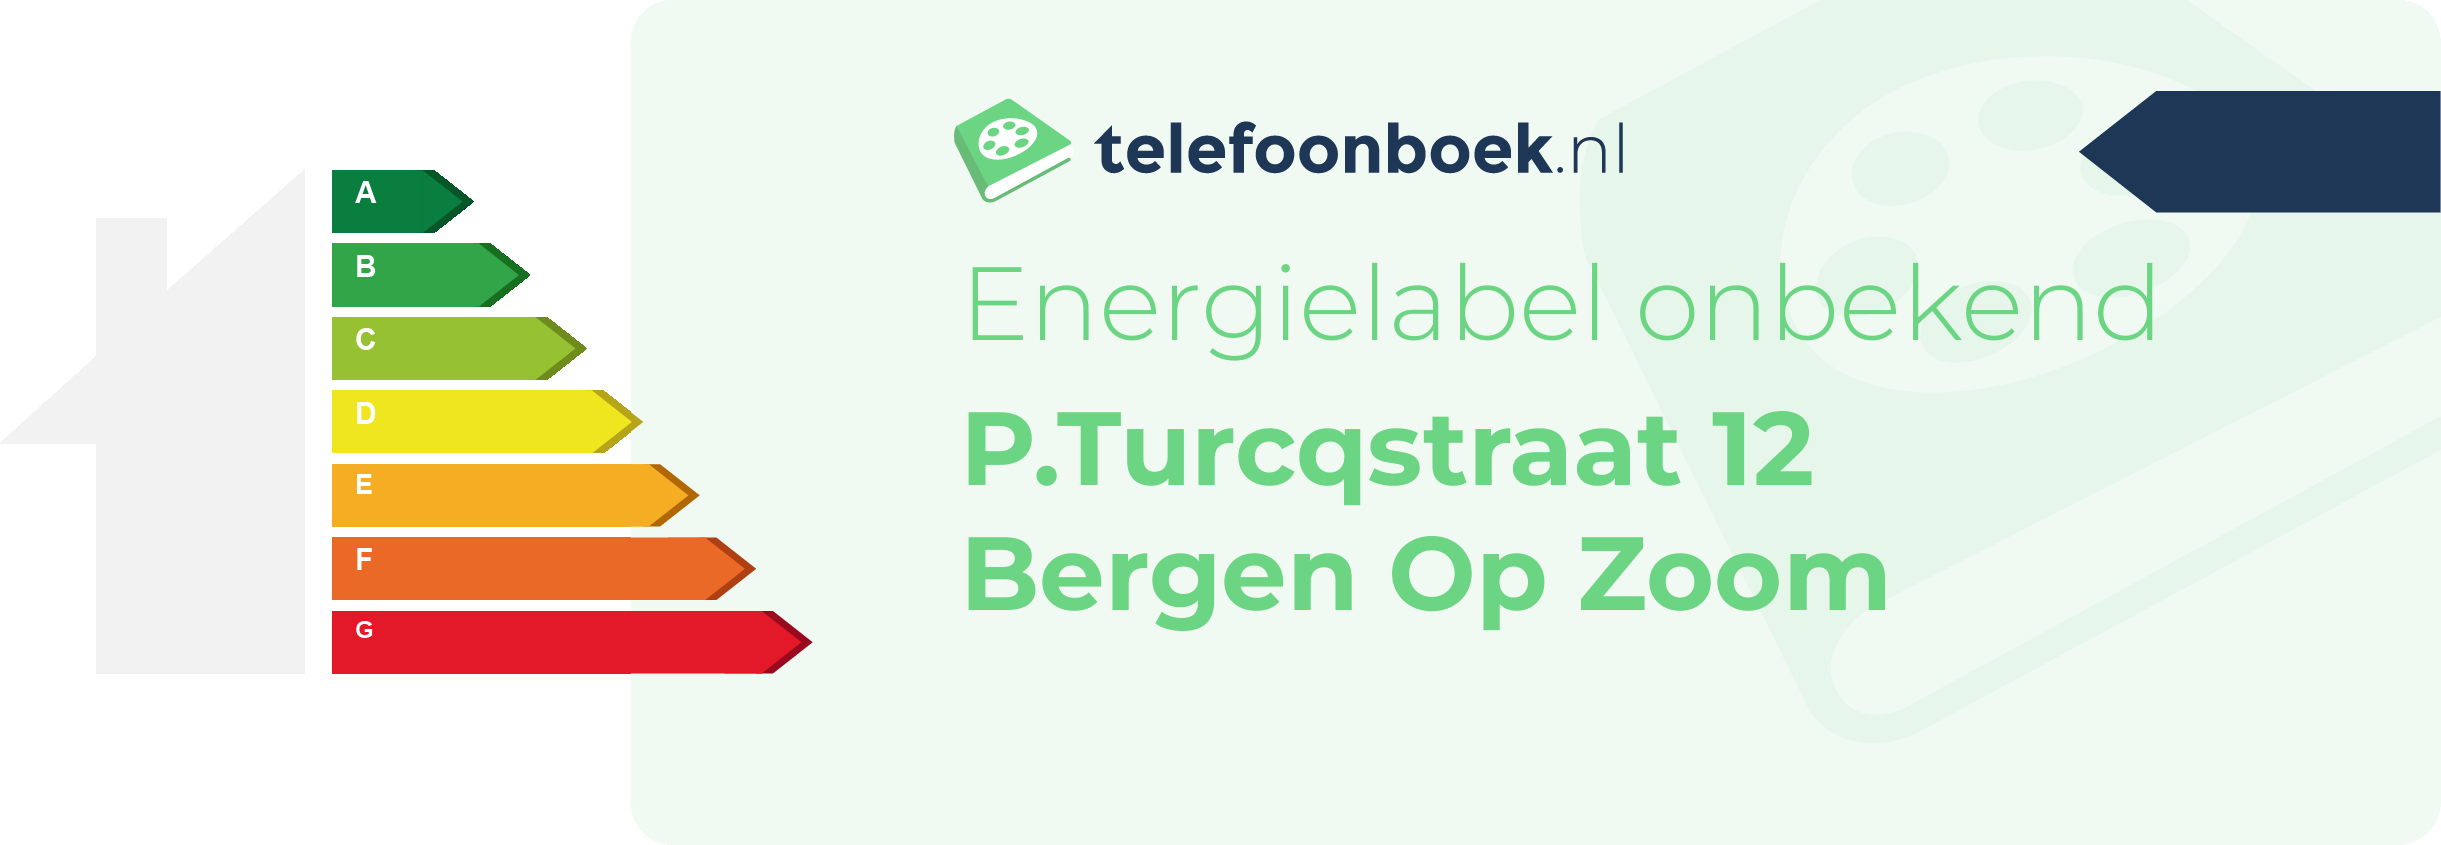 Energielabel P.Turcqstraat 12 Bergen Op Zoom